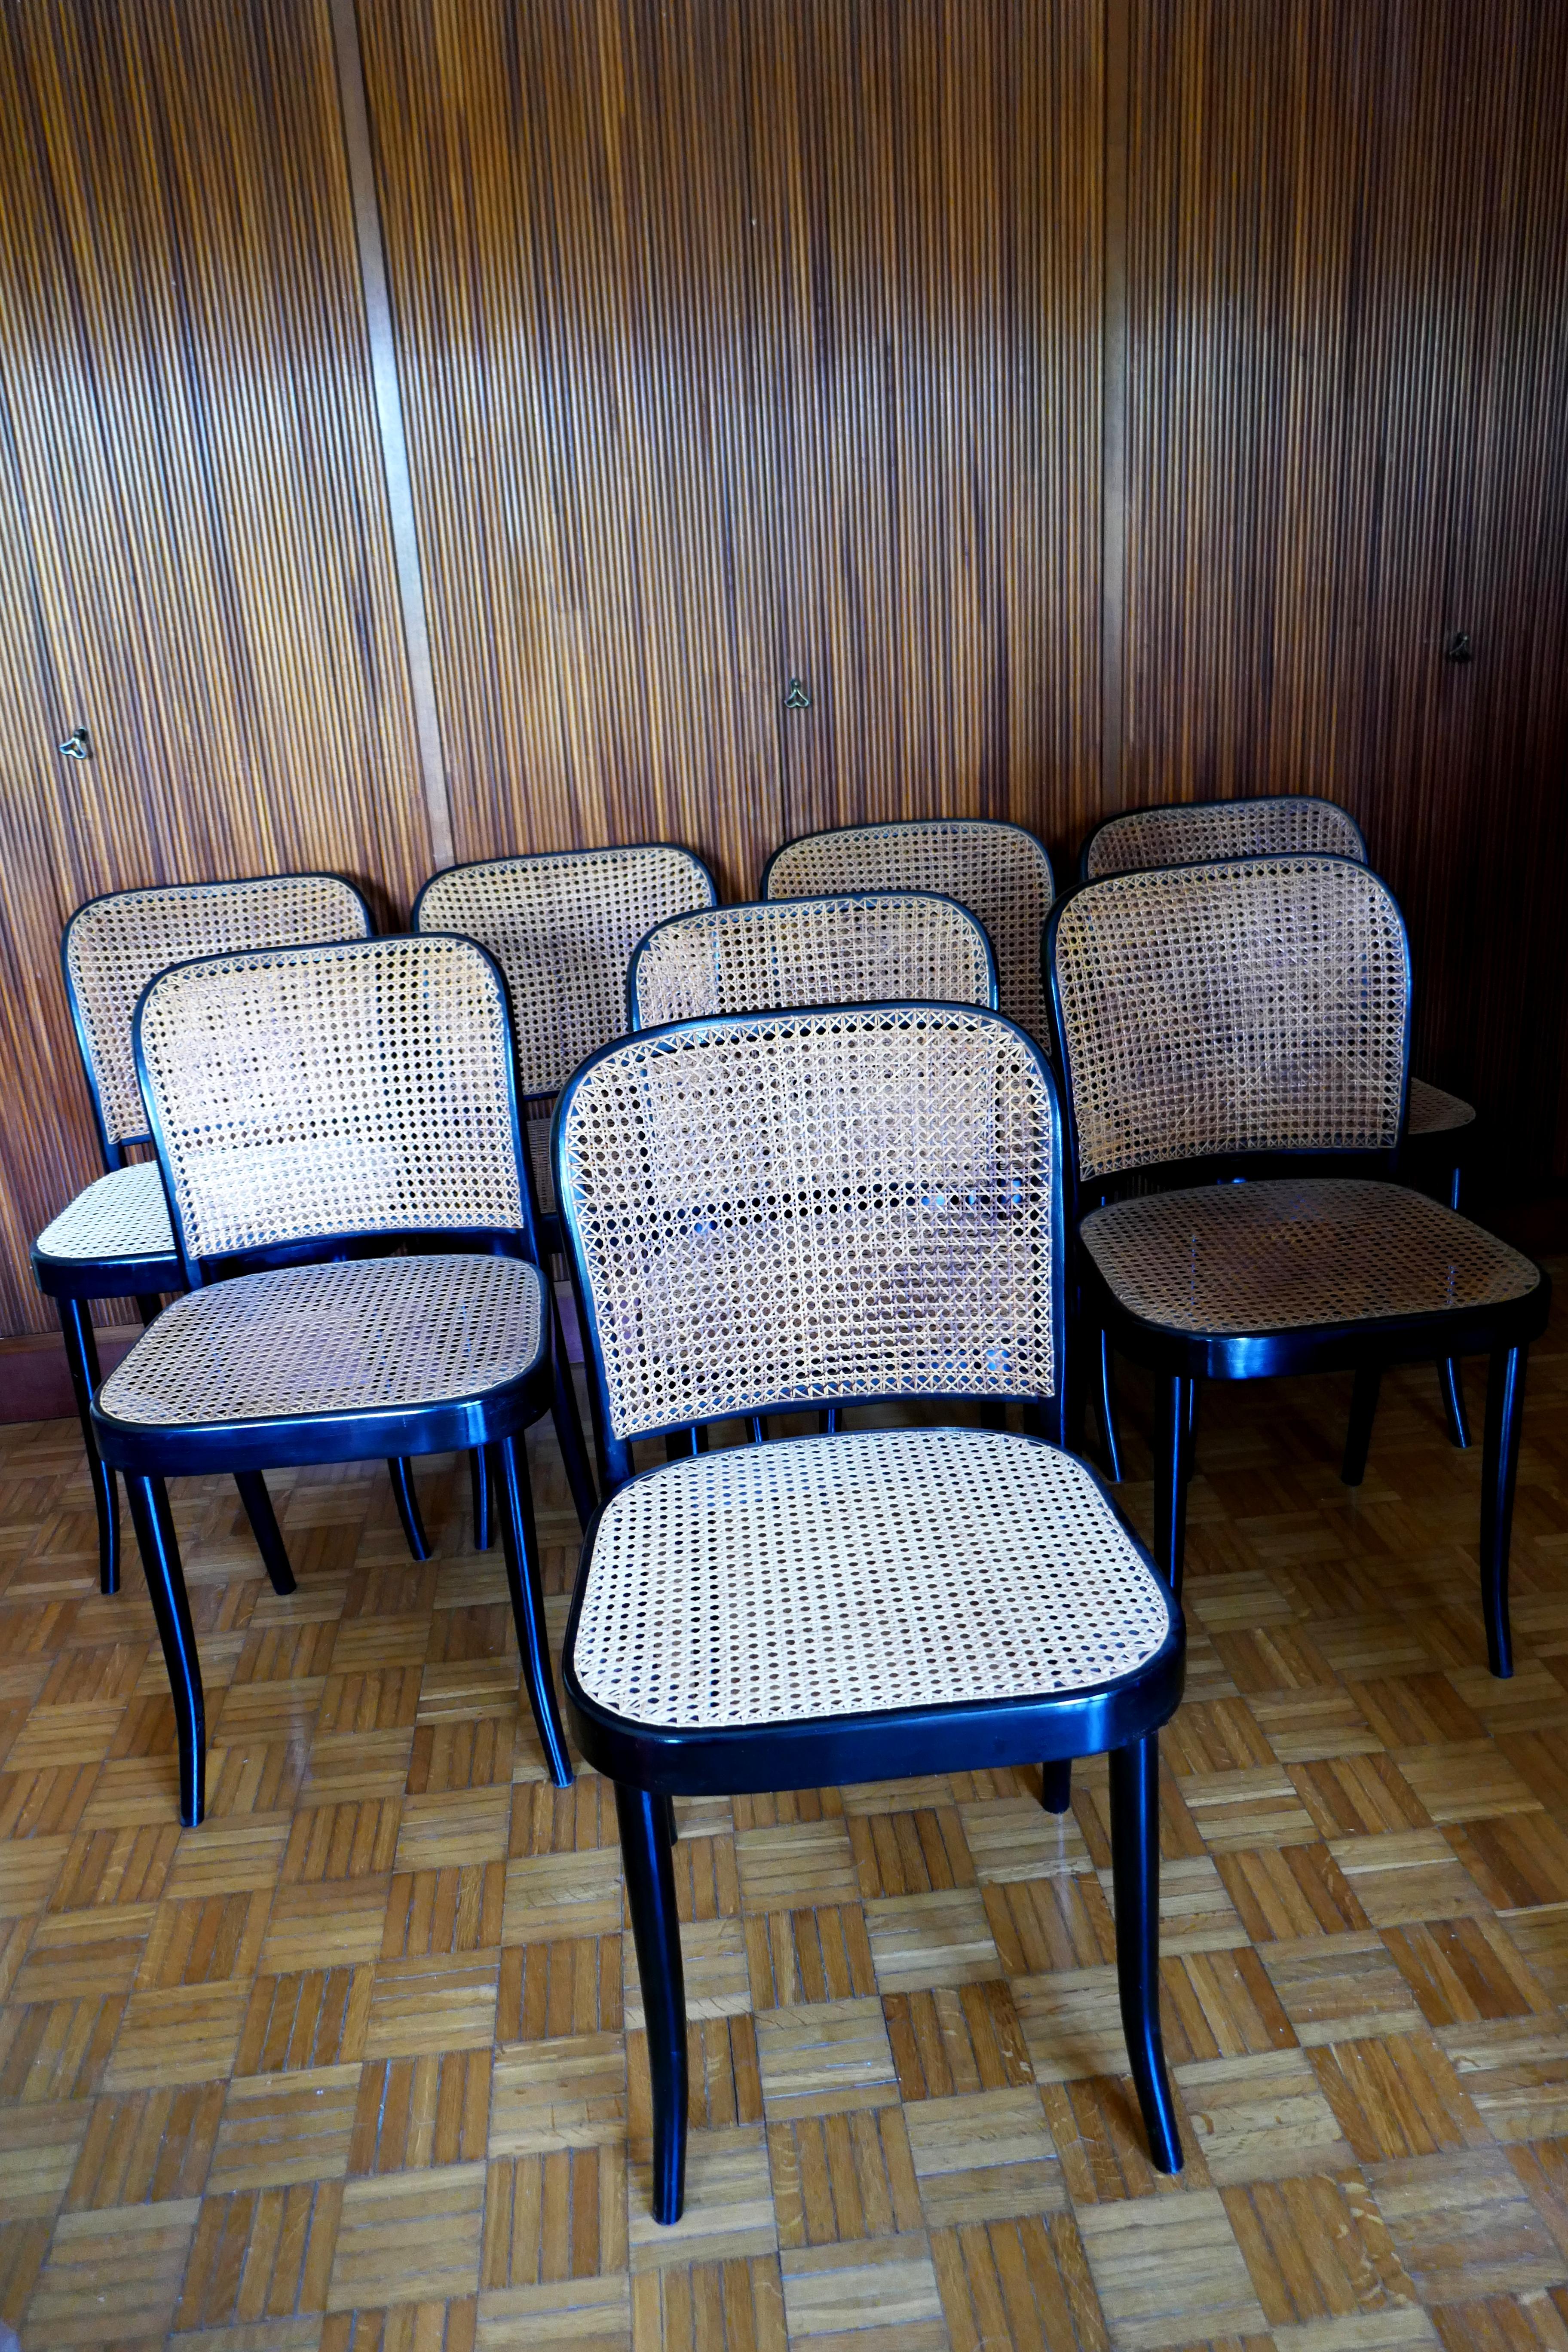 Otto sedie disegnate da Josef Hoffman per Ligna.
Buone condizioni e due sedute con la paglia rifatta.
Grazie